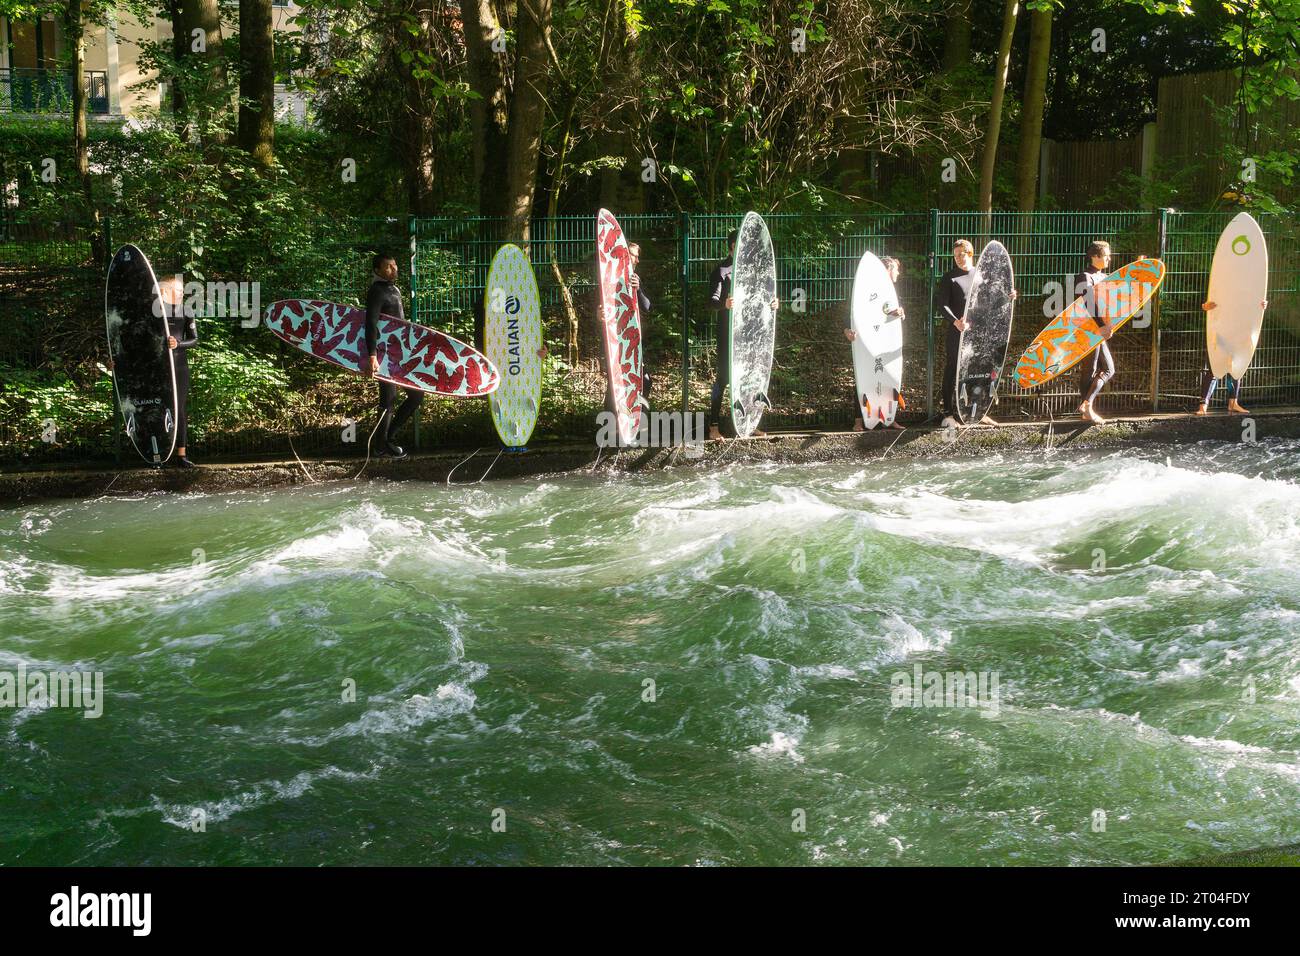 Munich Allemagne - les surfeurs font la queue sur la rivière Eisbach dans le parc public English Garden. Banque D'Images